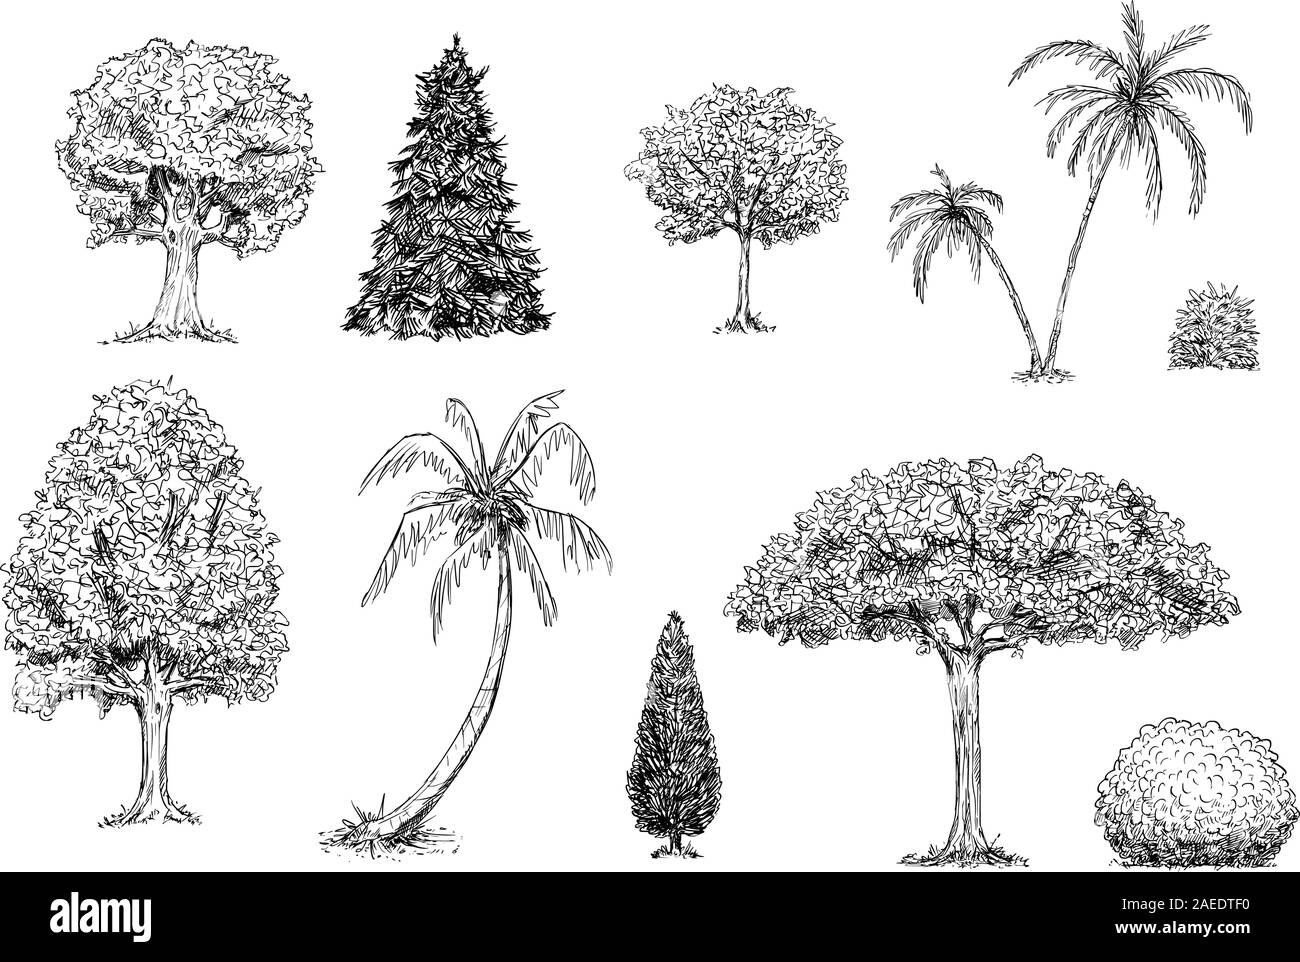 Hand drawn Vector illustration noir et blanc de l'ensemble d'arbres, palmiers et arbustes. Images de plantes et de la nature. Illustration de Vecteur